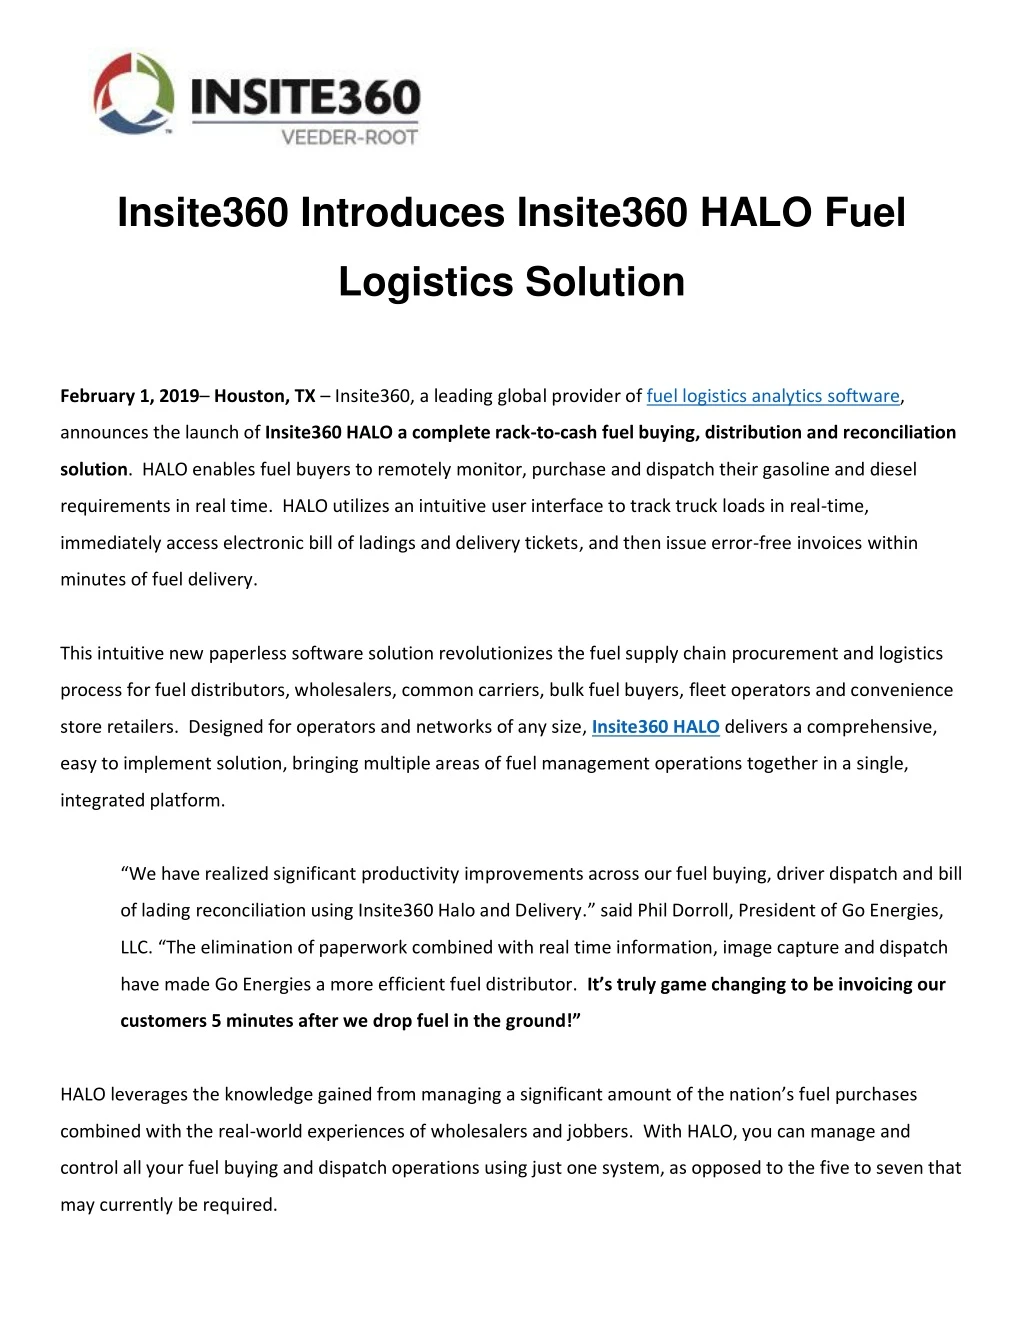 insite360 introduces insite360 halo fuel